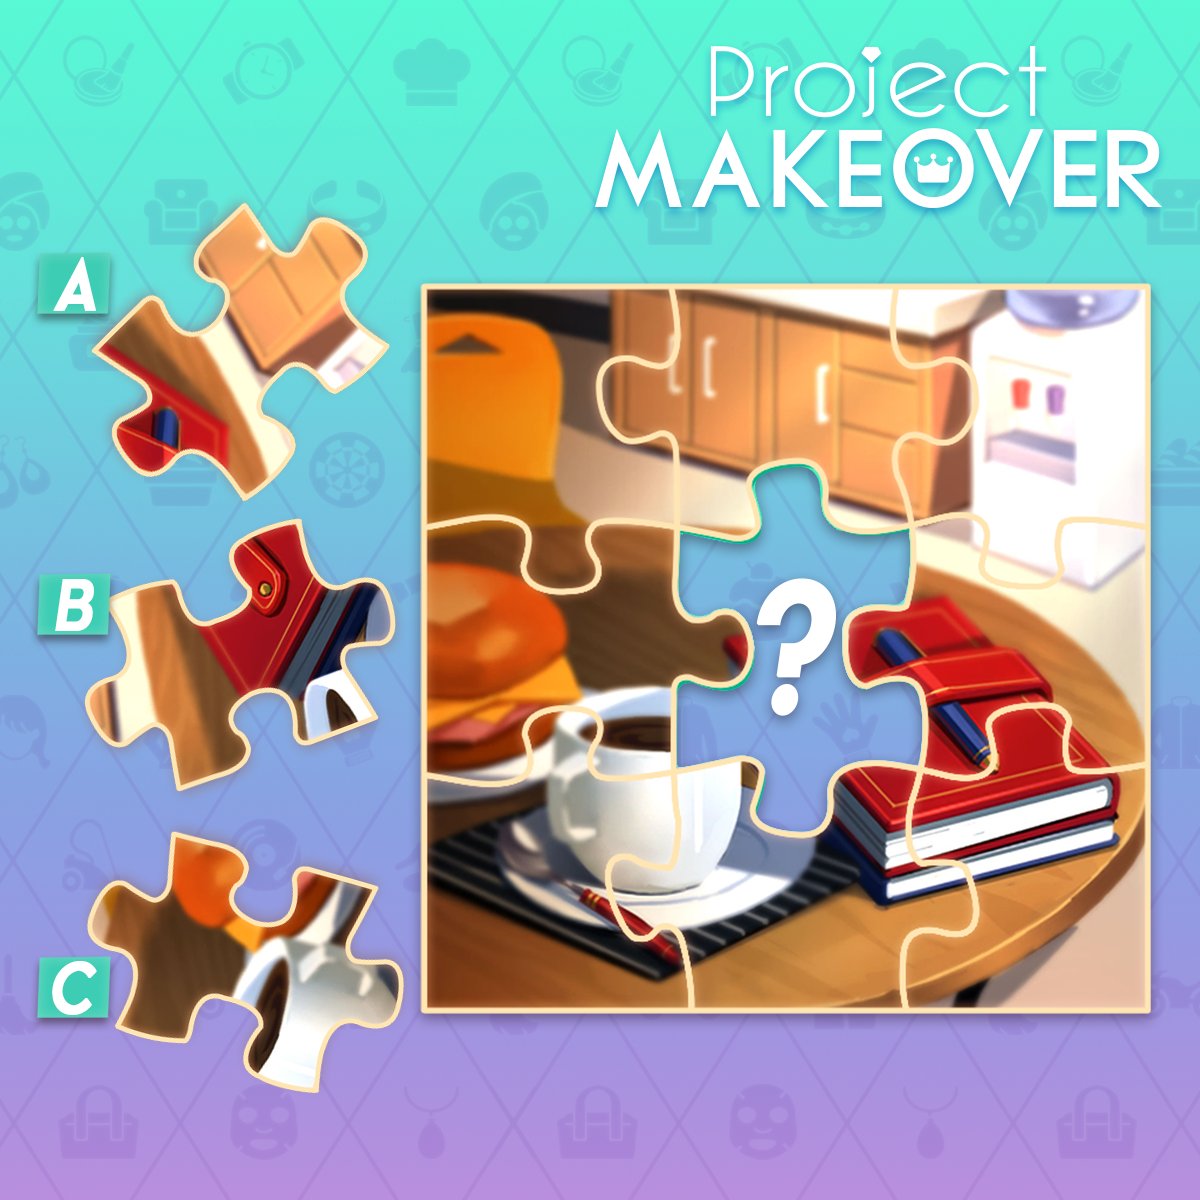 プロジェクト メイクオーバー Project Makeover 簡単なパズルゲームです 残りのピースを探して写真を完成させよう Projectmakeover プロジェクト メイクオーバー